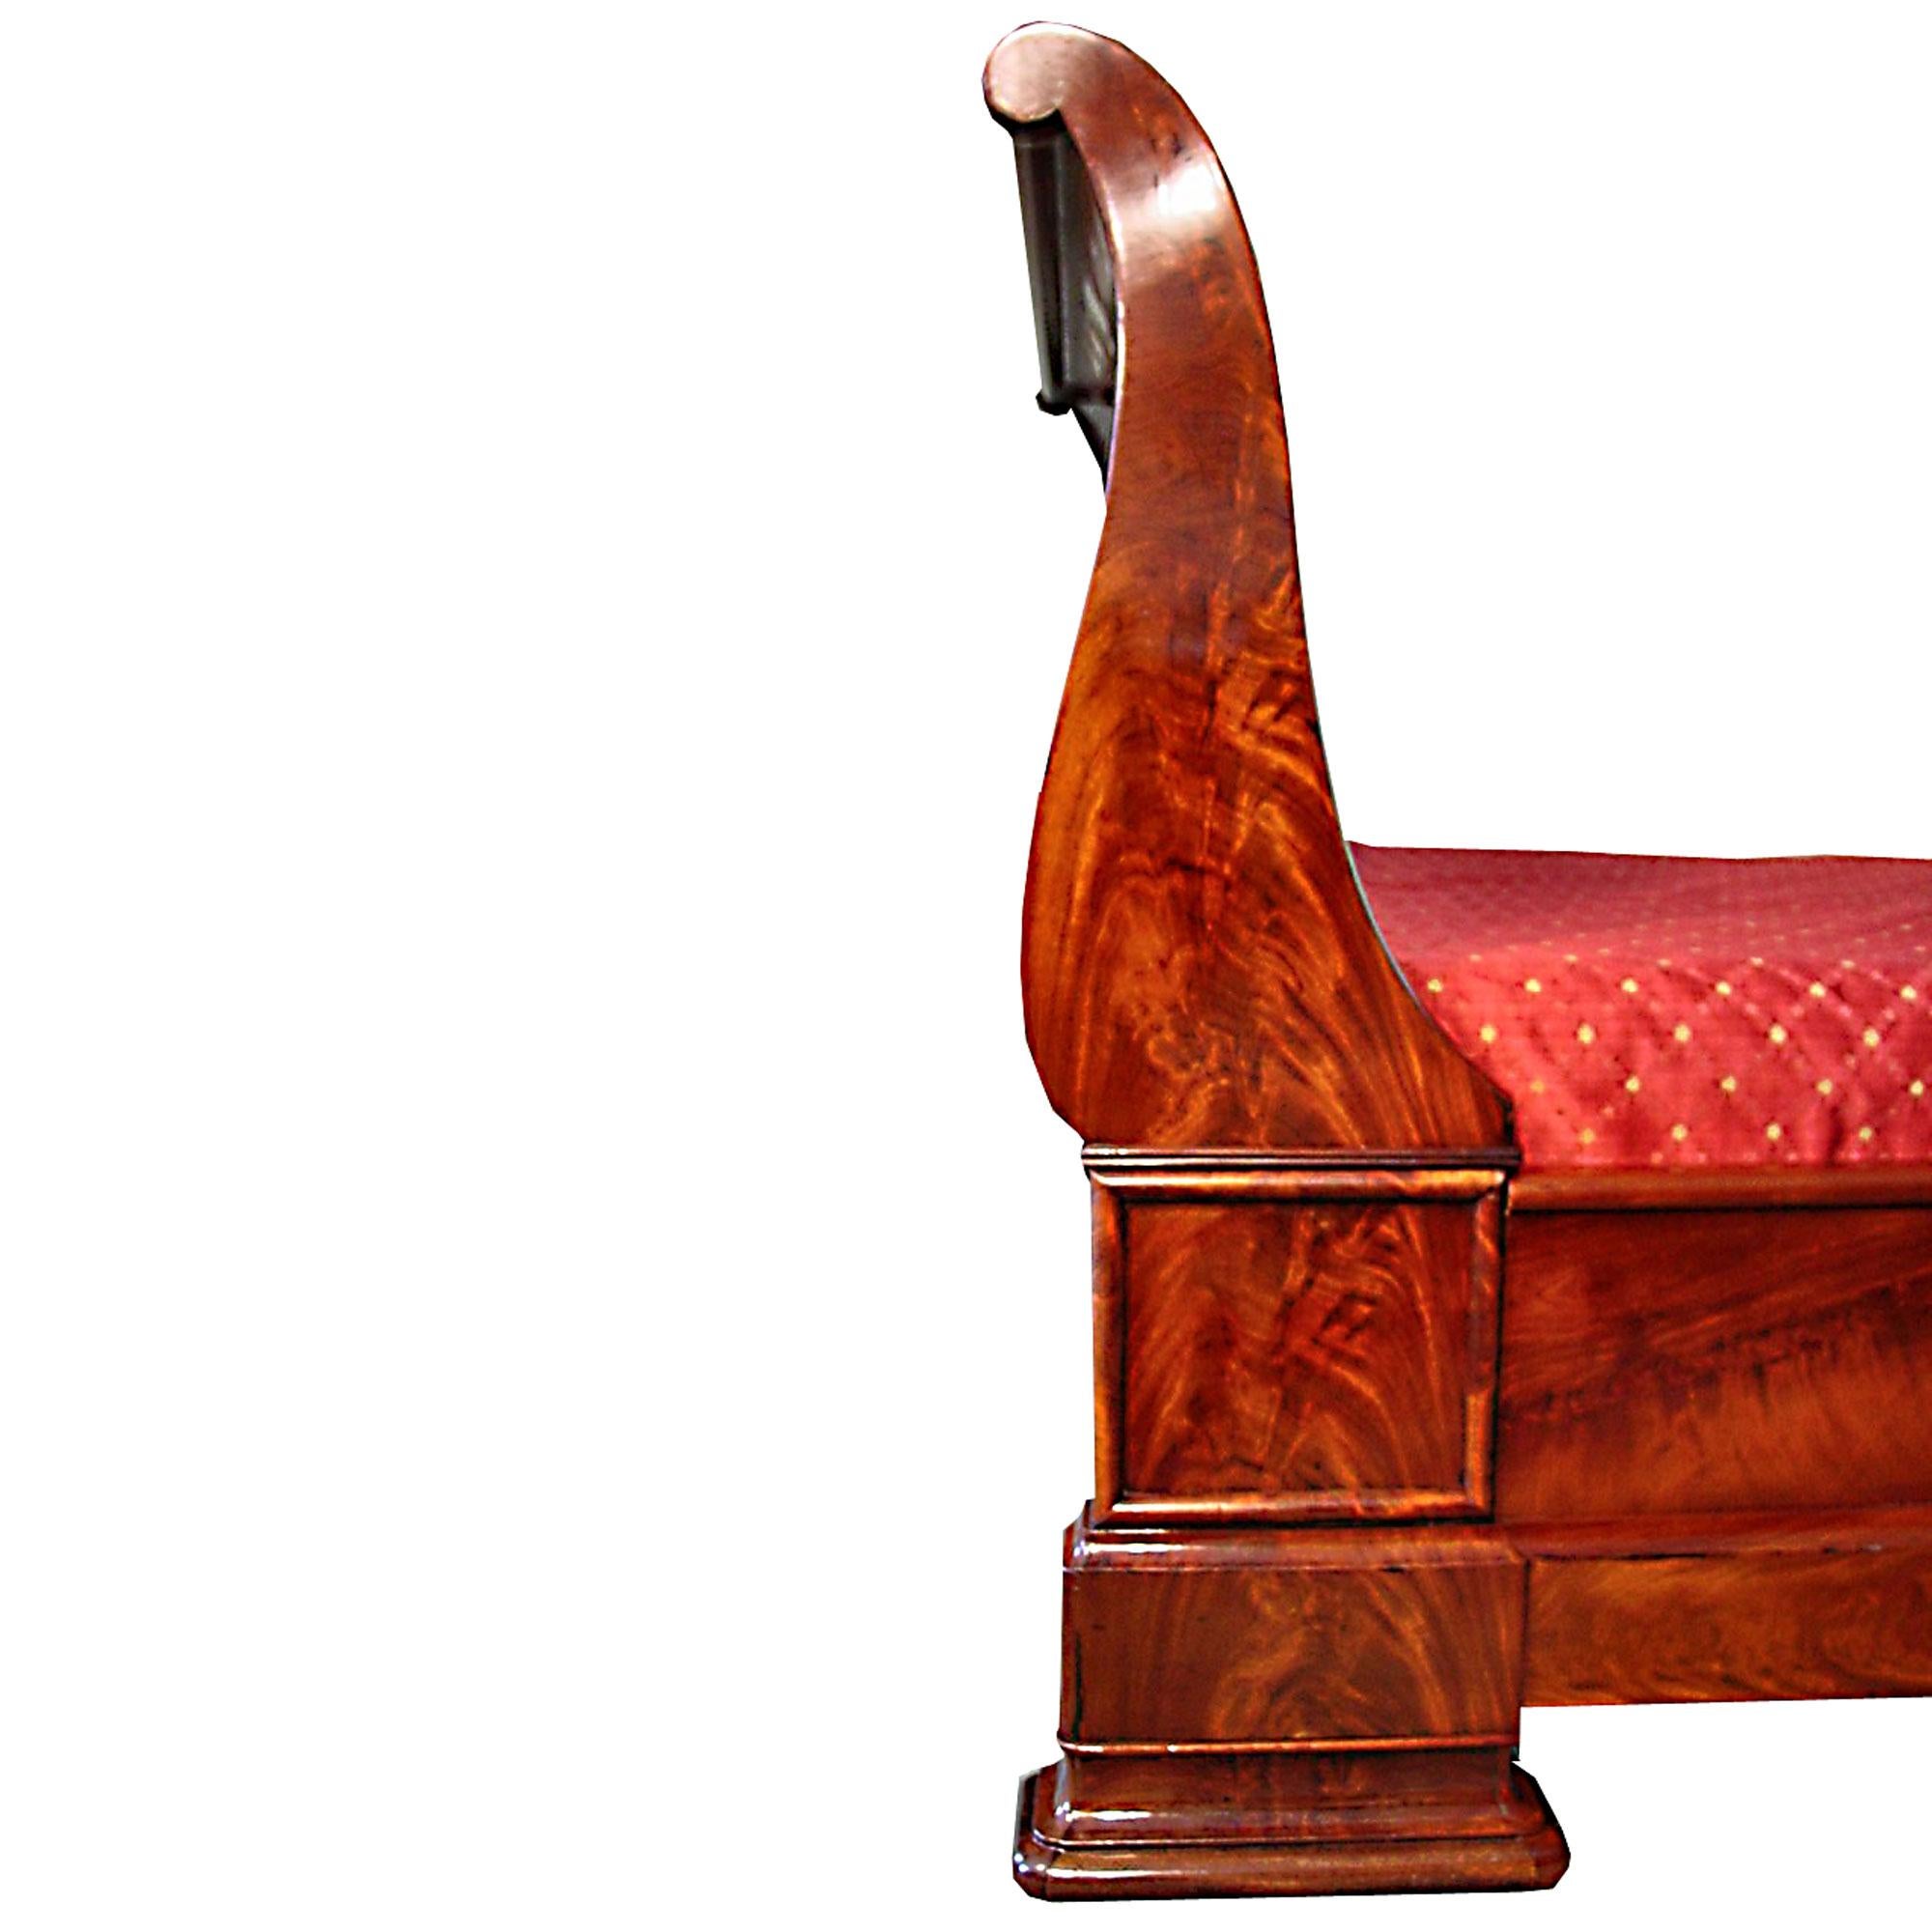 Un exquis et élégant lit à baldaquin néo-classique français du milieu du 19ème siècle en acajou crouch. Les deux côtés, aux proportions magnifiques, présentent un beau dessin incurvé, tandis que la face avant présente un bord carré mouluré au-dessus